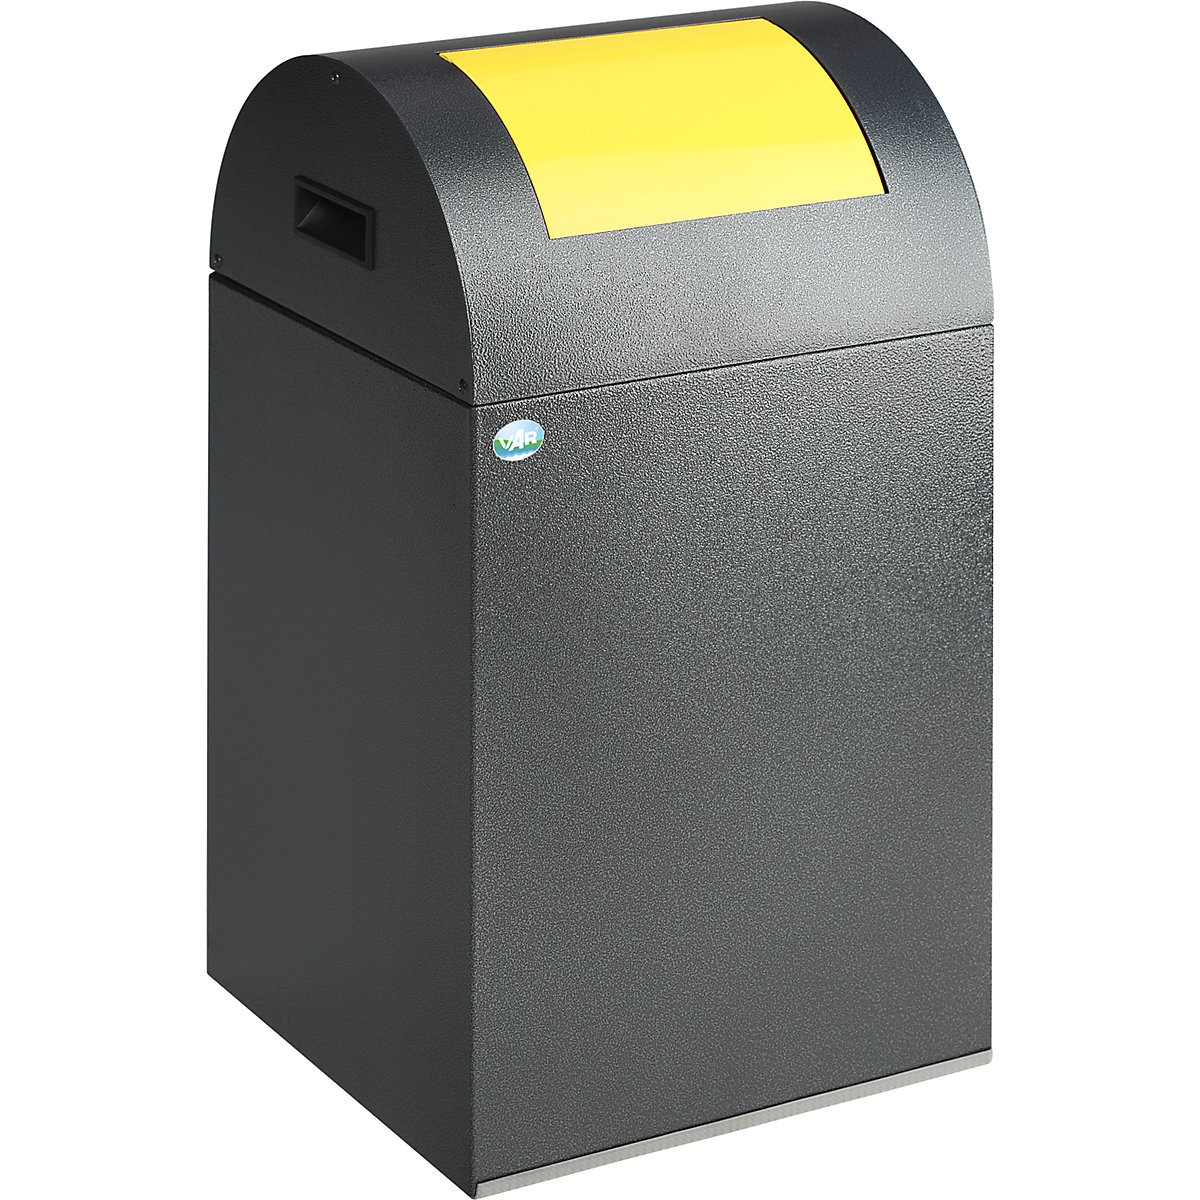 Coletor de materiais recicláveis autoextintor - VAR